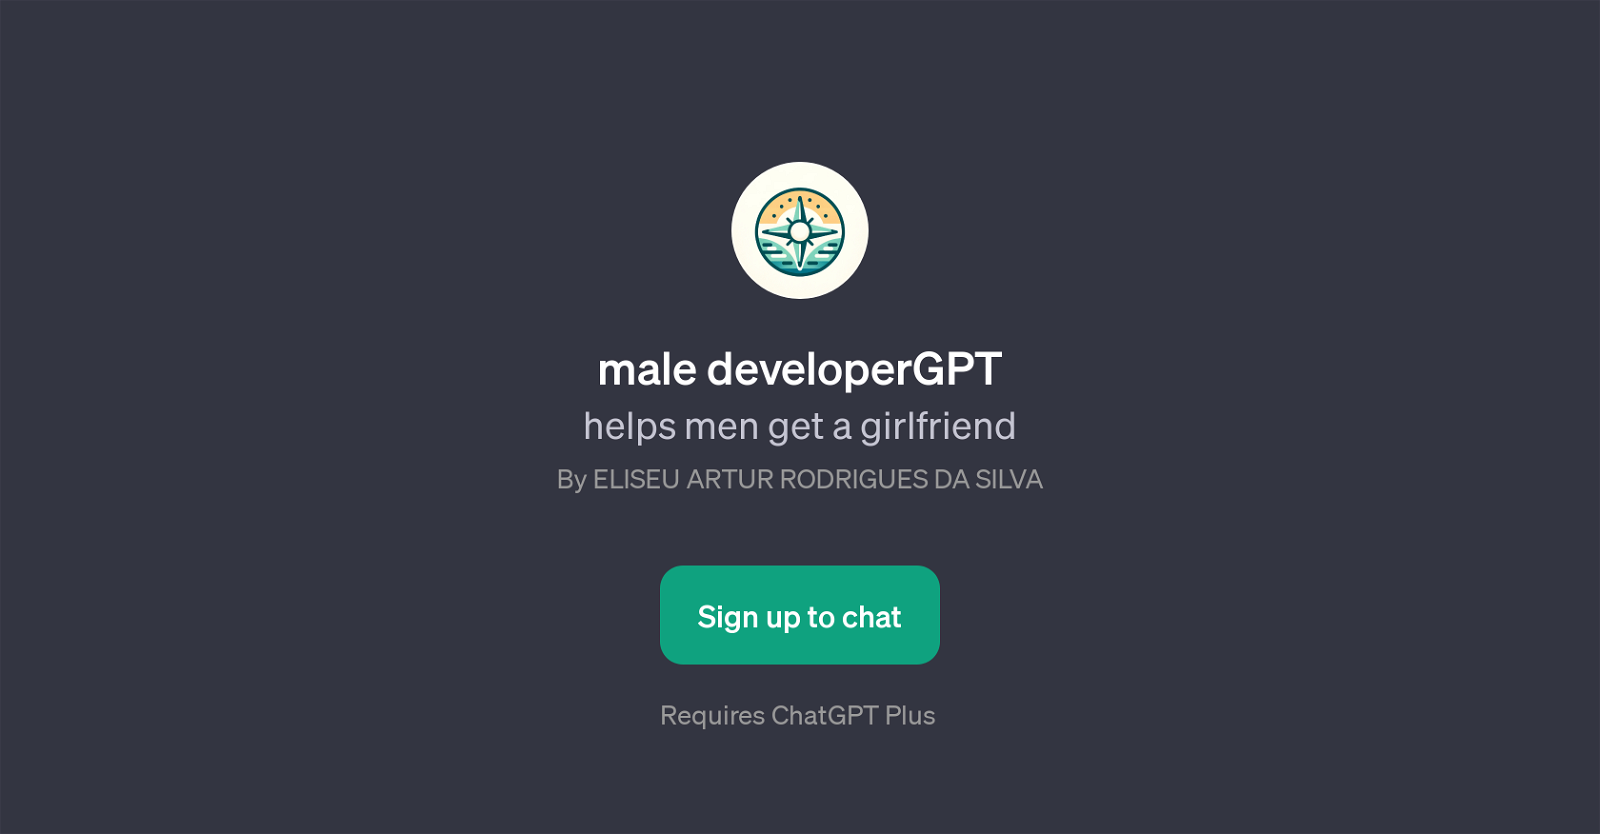 male developerGPT website